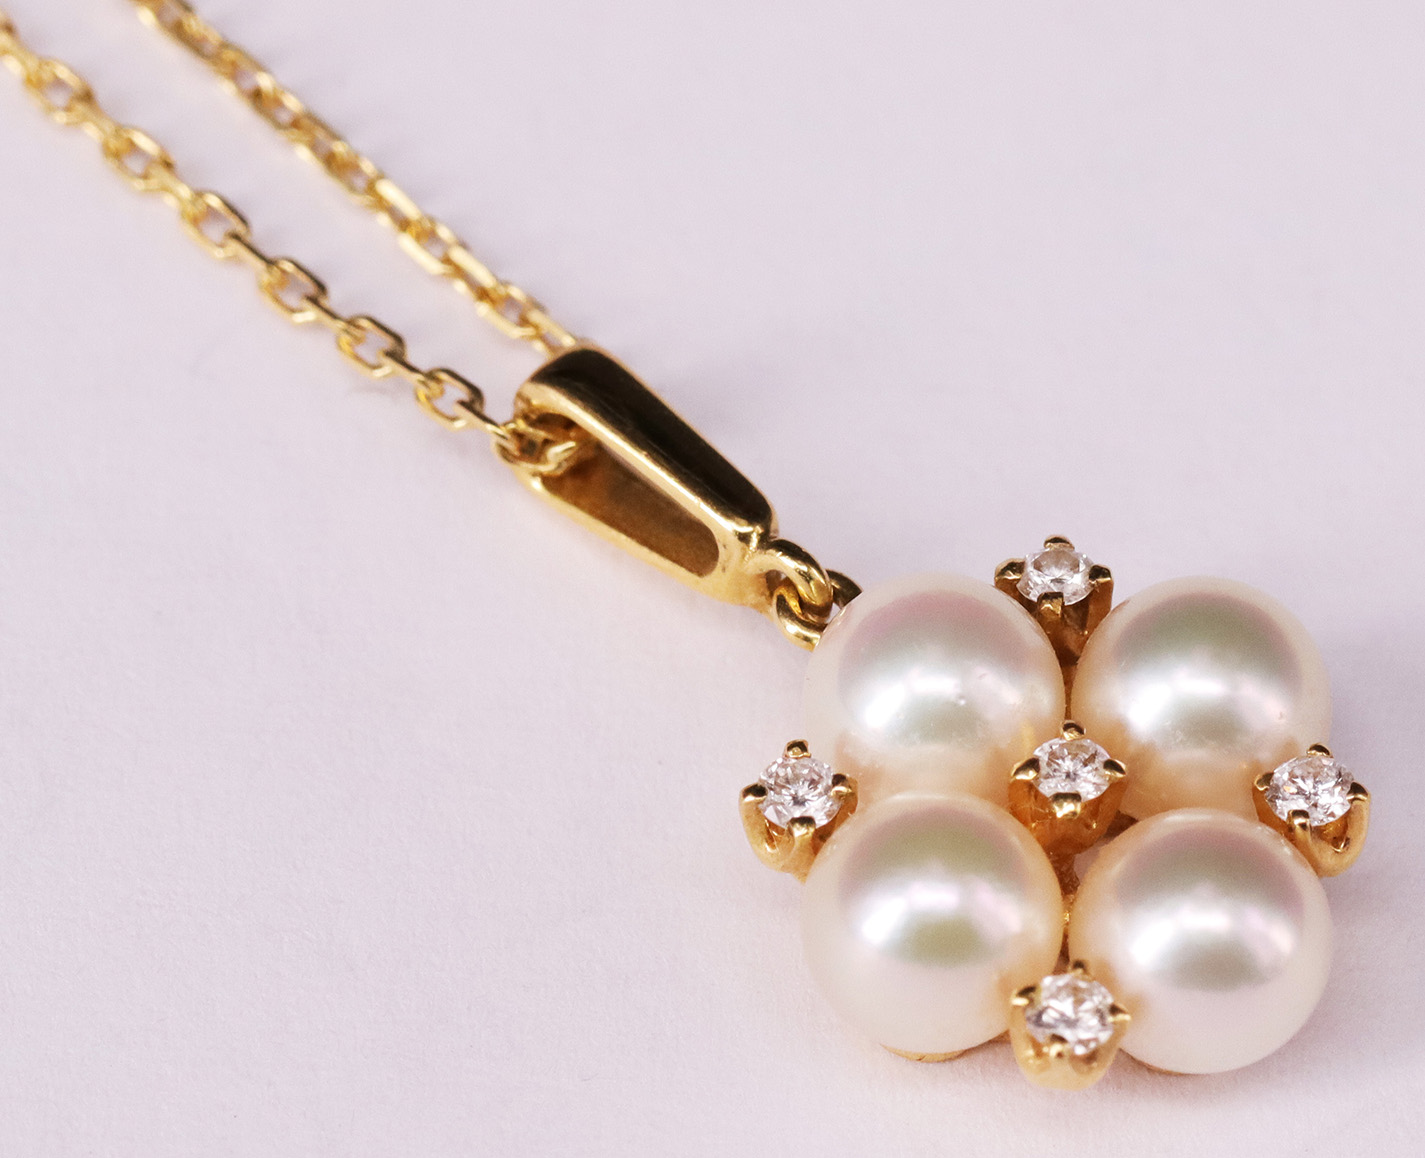 Anhänger mit Perlen und Diamanten, dazu Goldkette / Pendant with pearls and diamonds, plus a gold